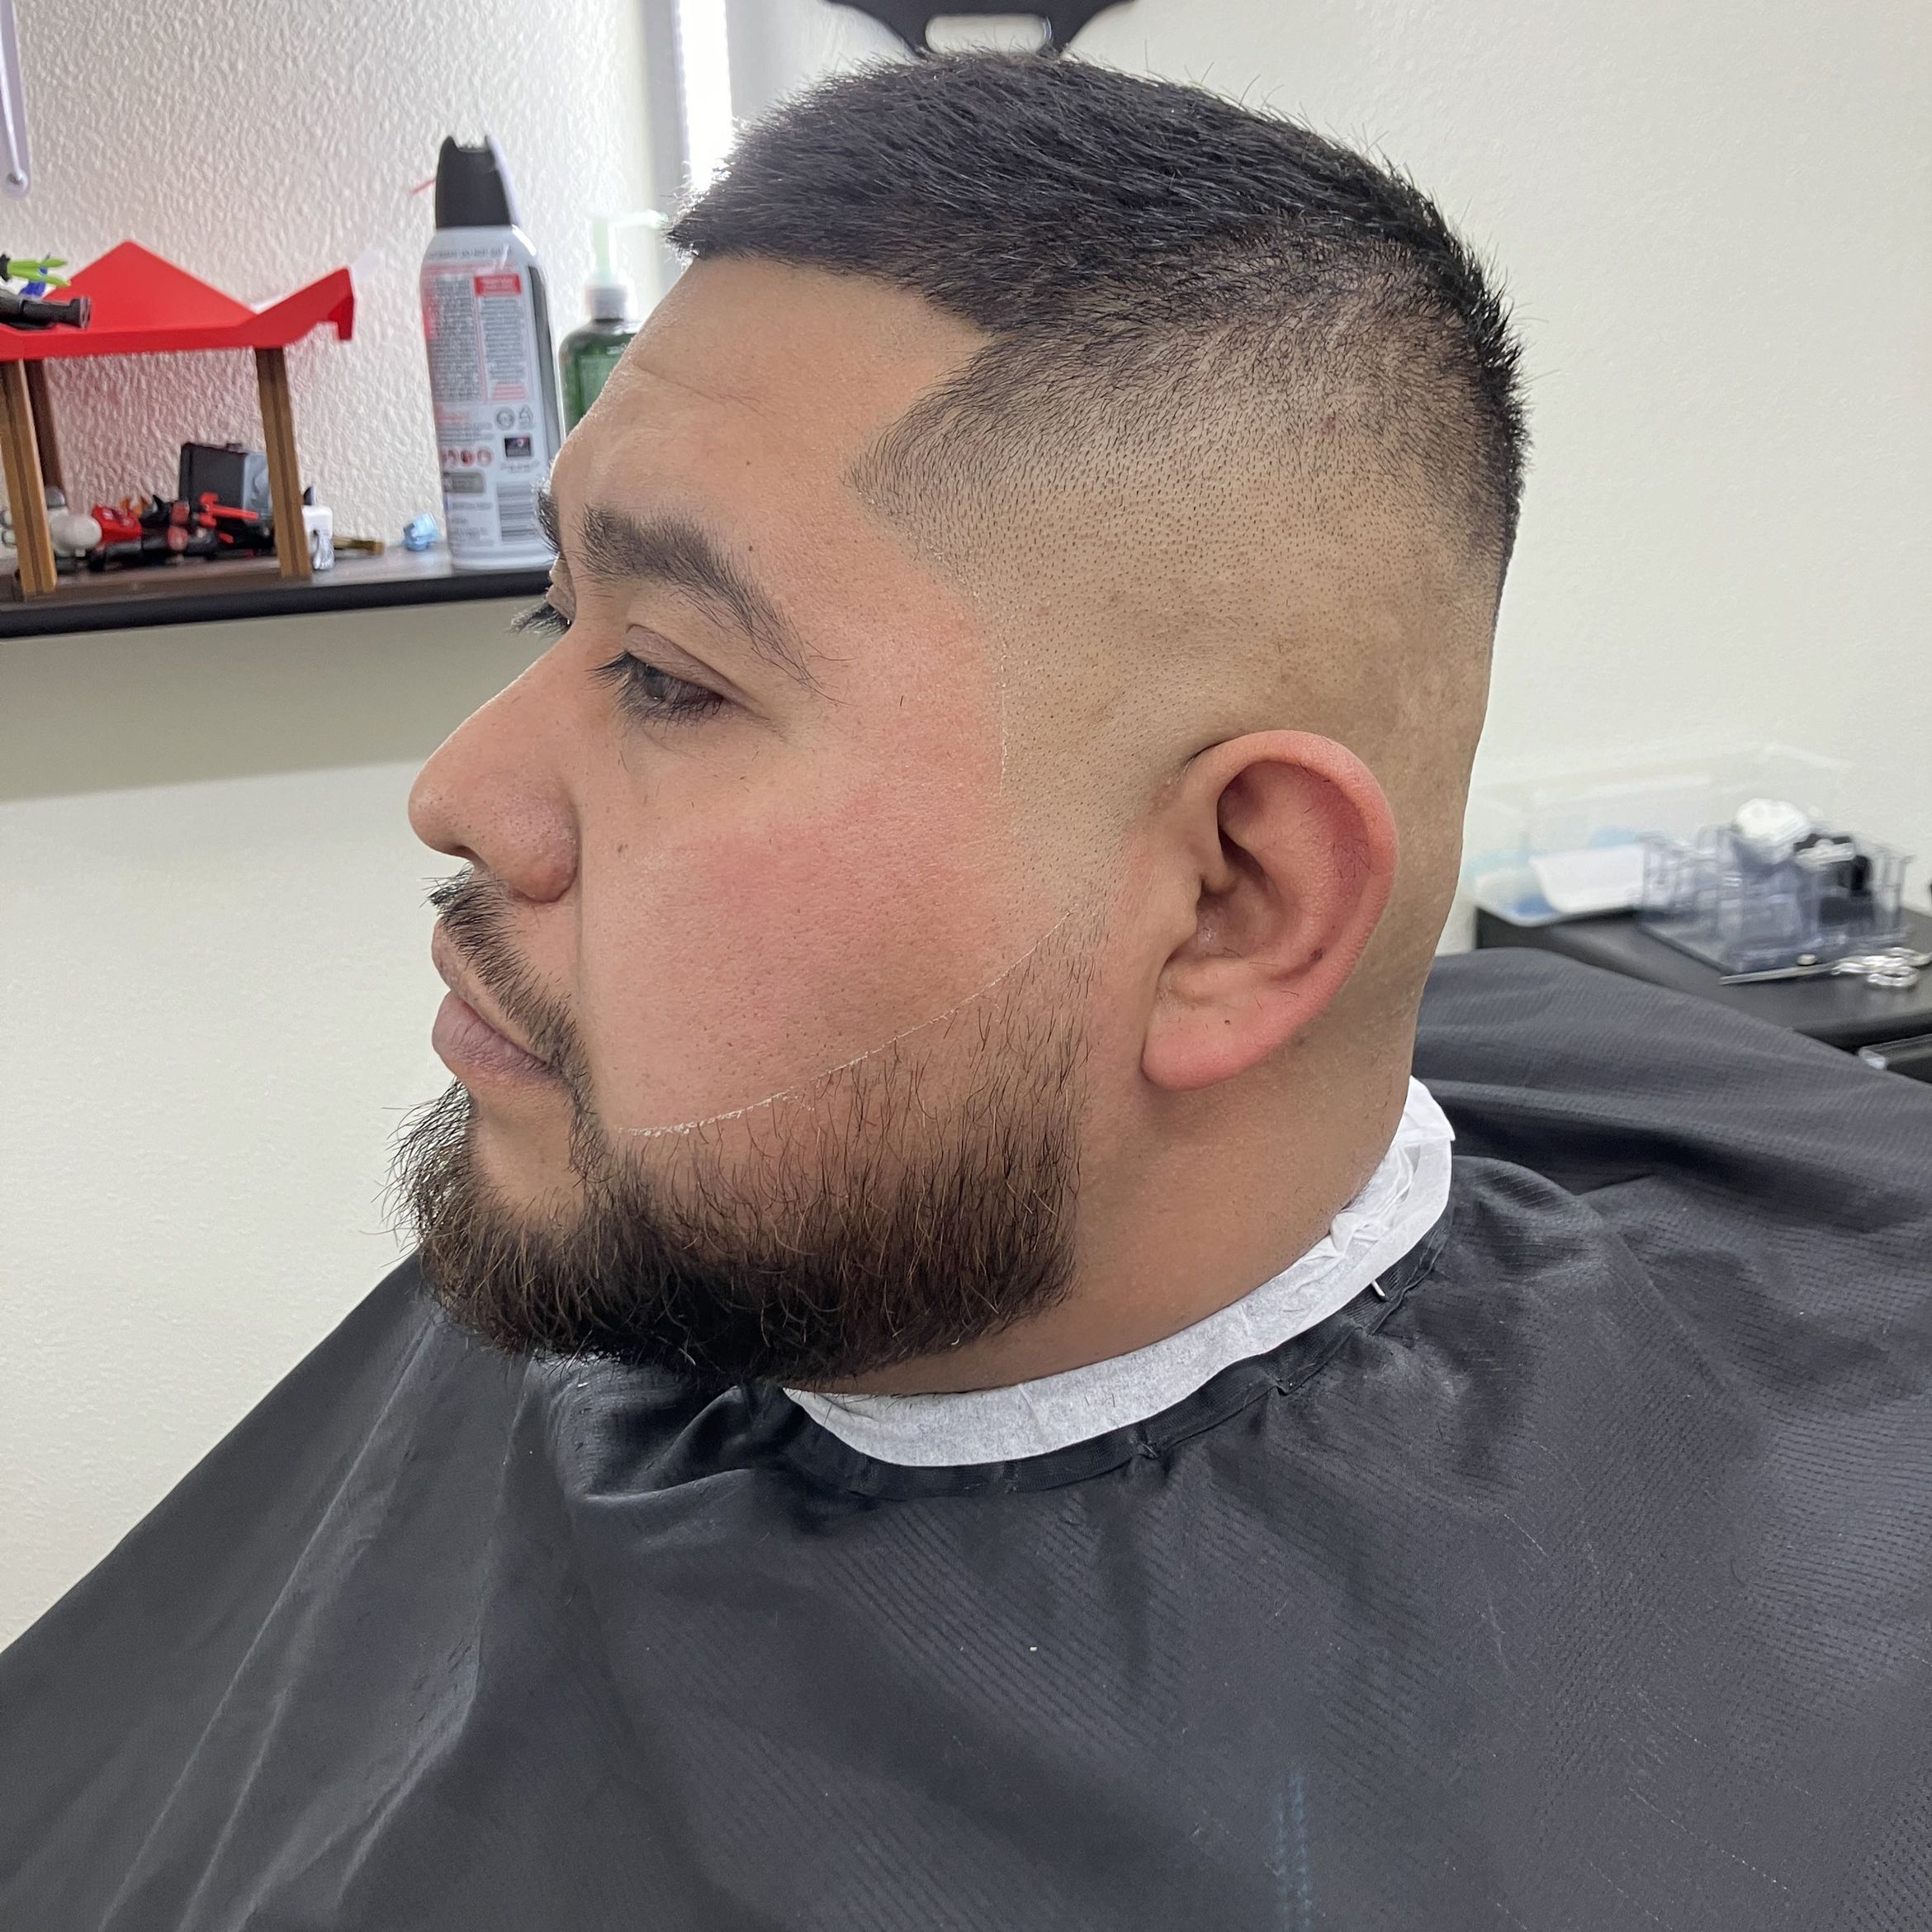 The Rivas ( hair. Cut and bear trim) portfolio